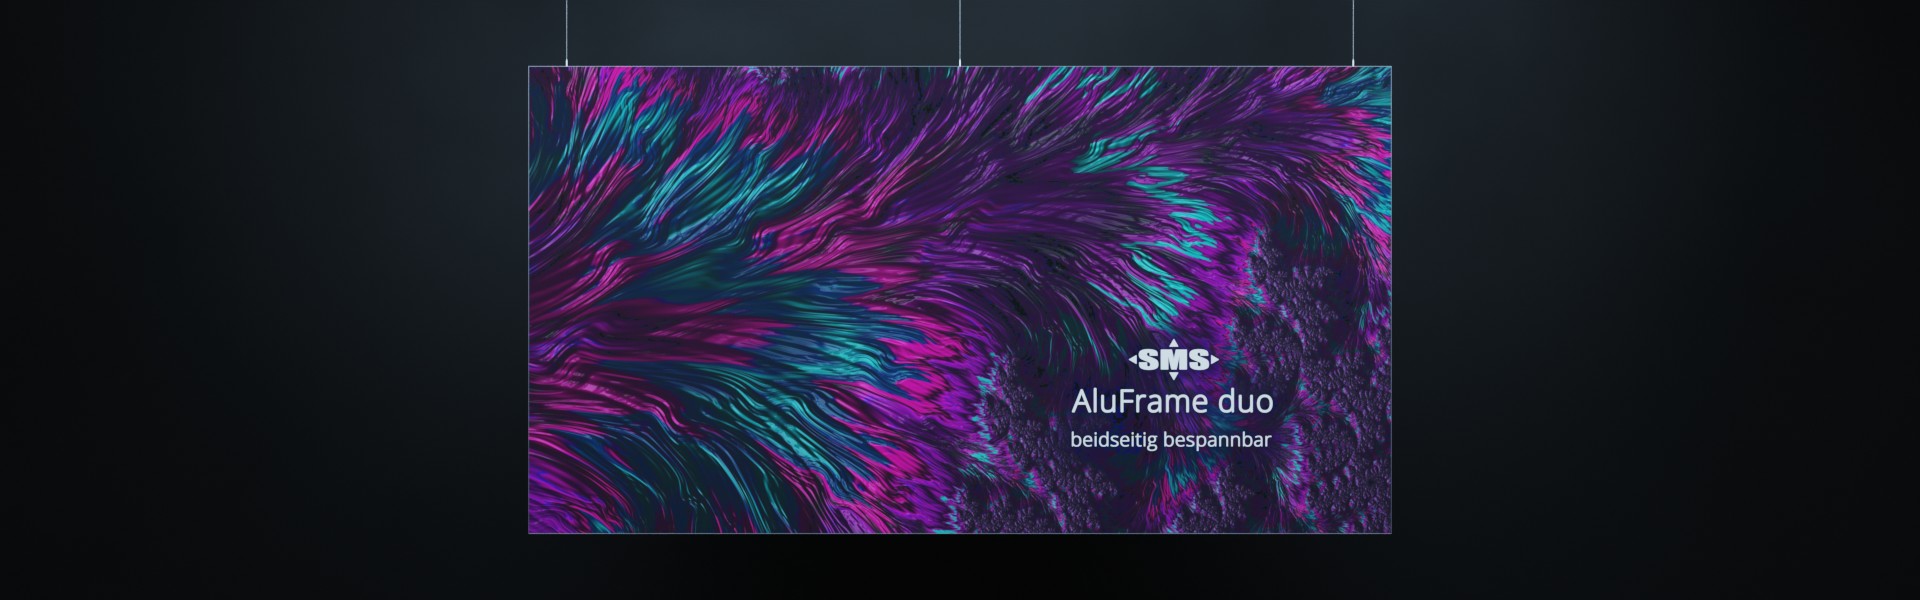 AluFrame duo: Beidseitig bespannbarer Spannrahmen aus Alumnium für Darstellung großformatiger Textildrucke